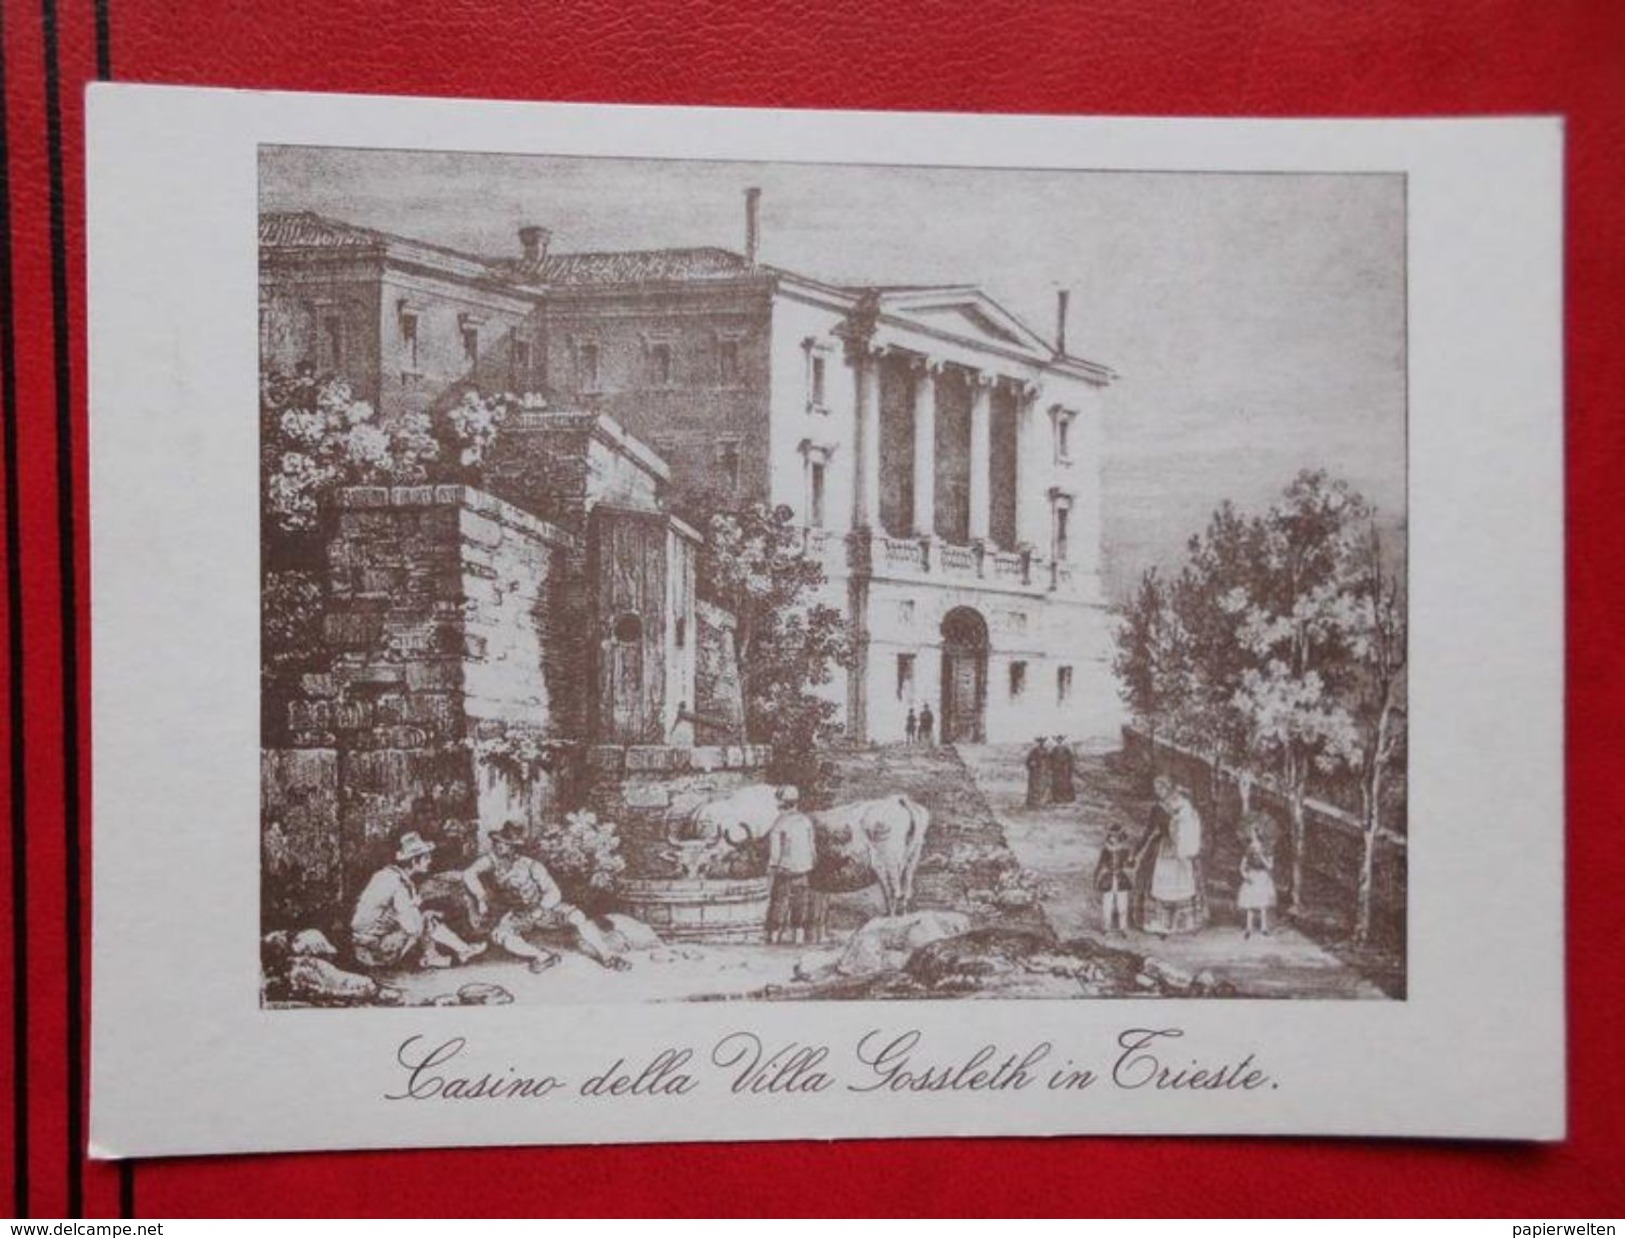 Trieste - Reprint (14,8 X 10,5 Cm): "Casino Della Villa Gossleth In Trieste" - Trieste